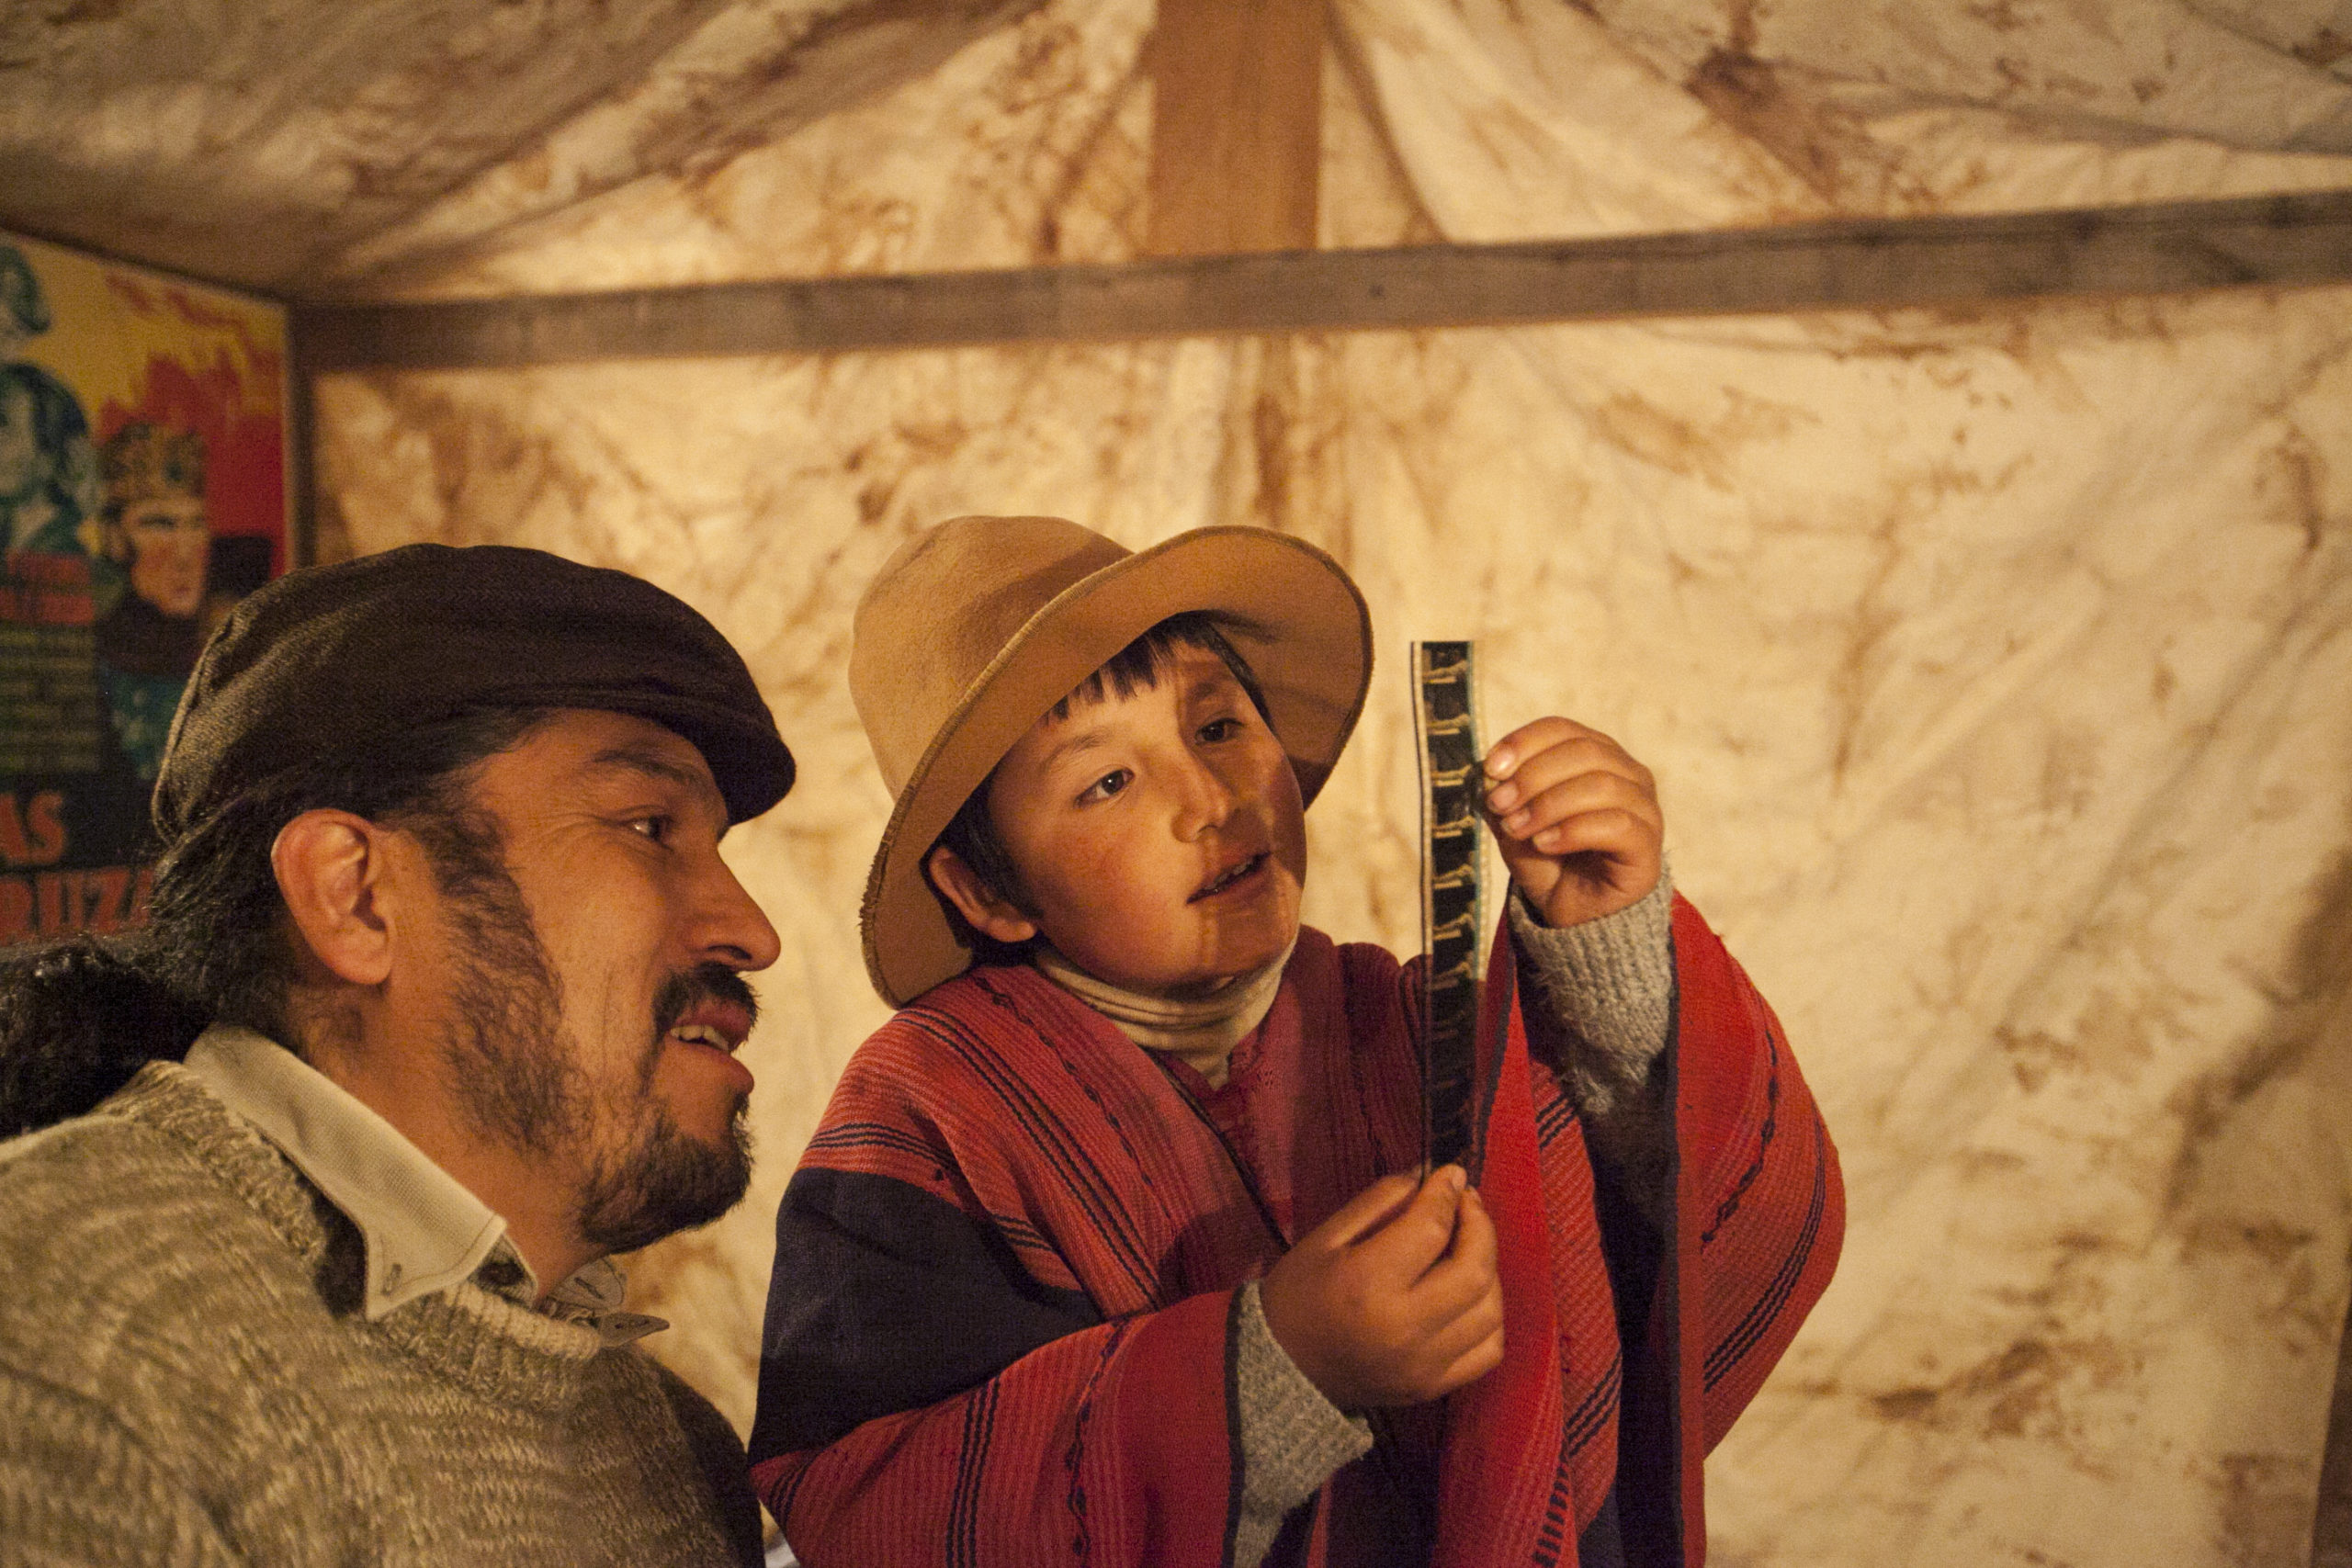 ‘Willaq Pirqa, el cine de mi pueblo’ se estrenará el 8 de diciembre en los cines nacionales